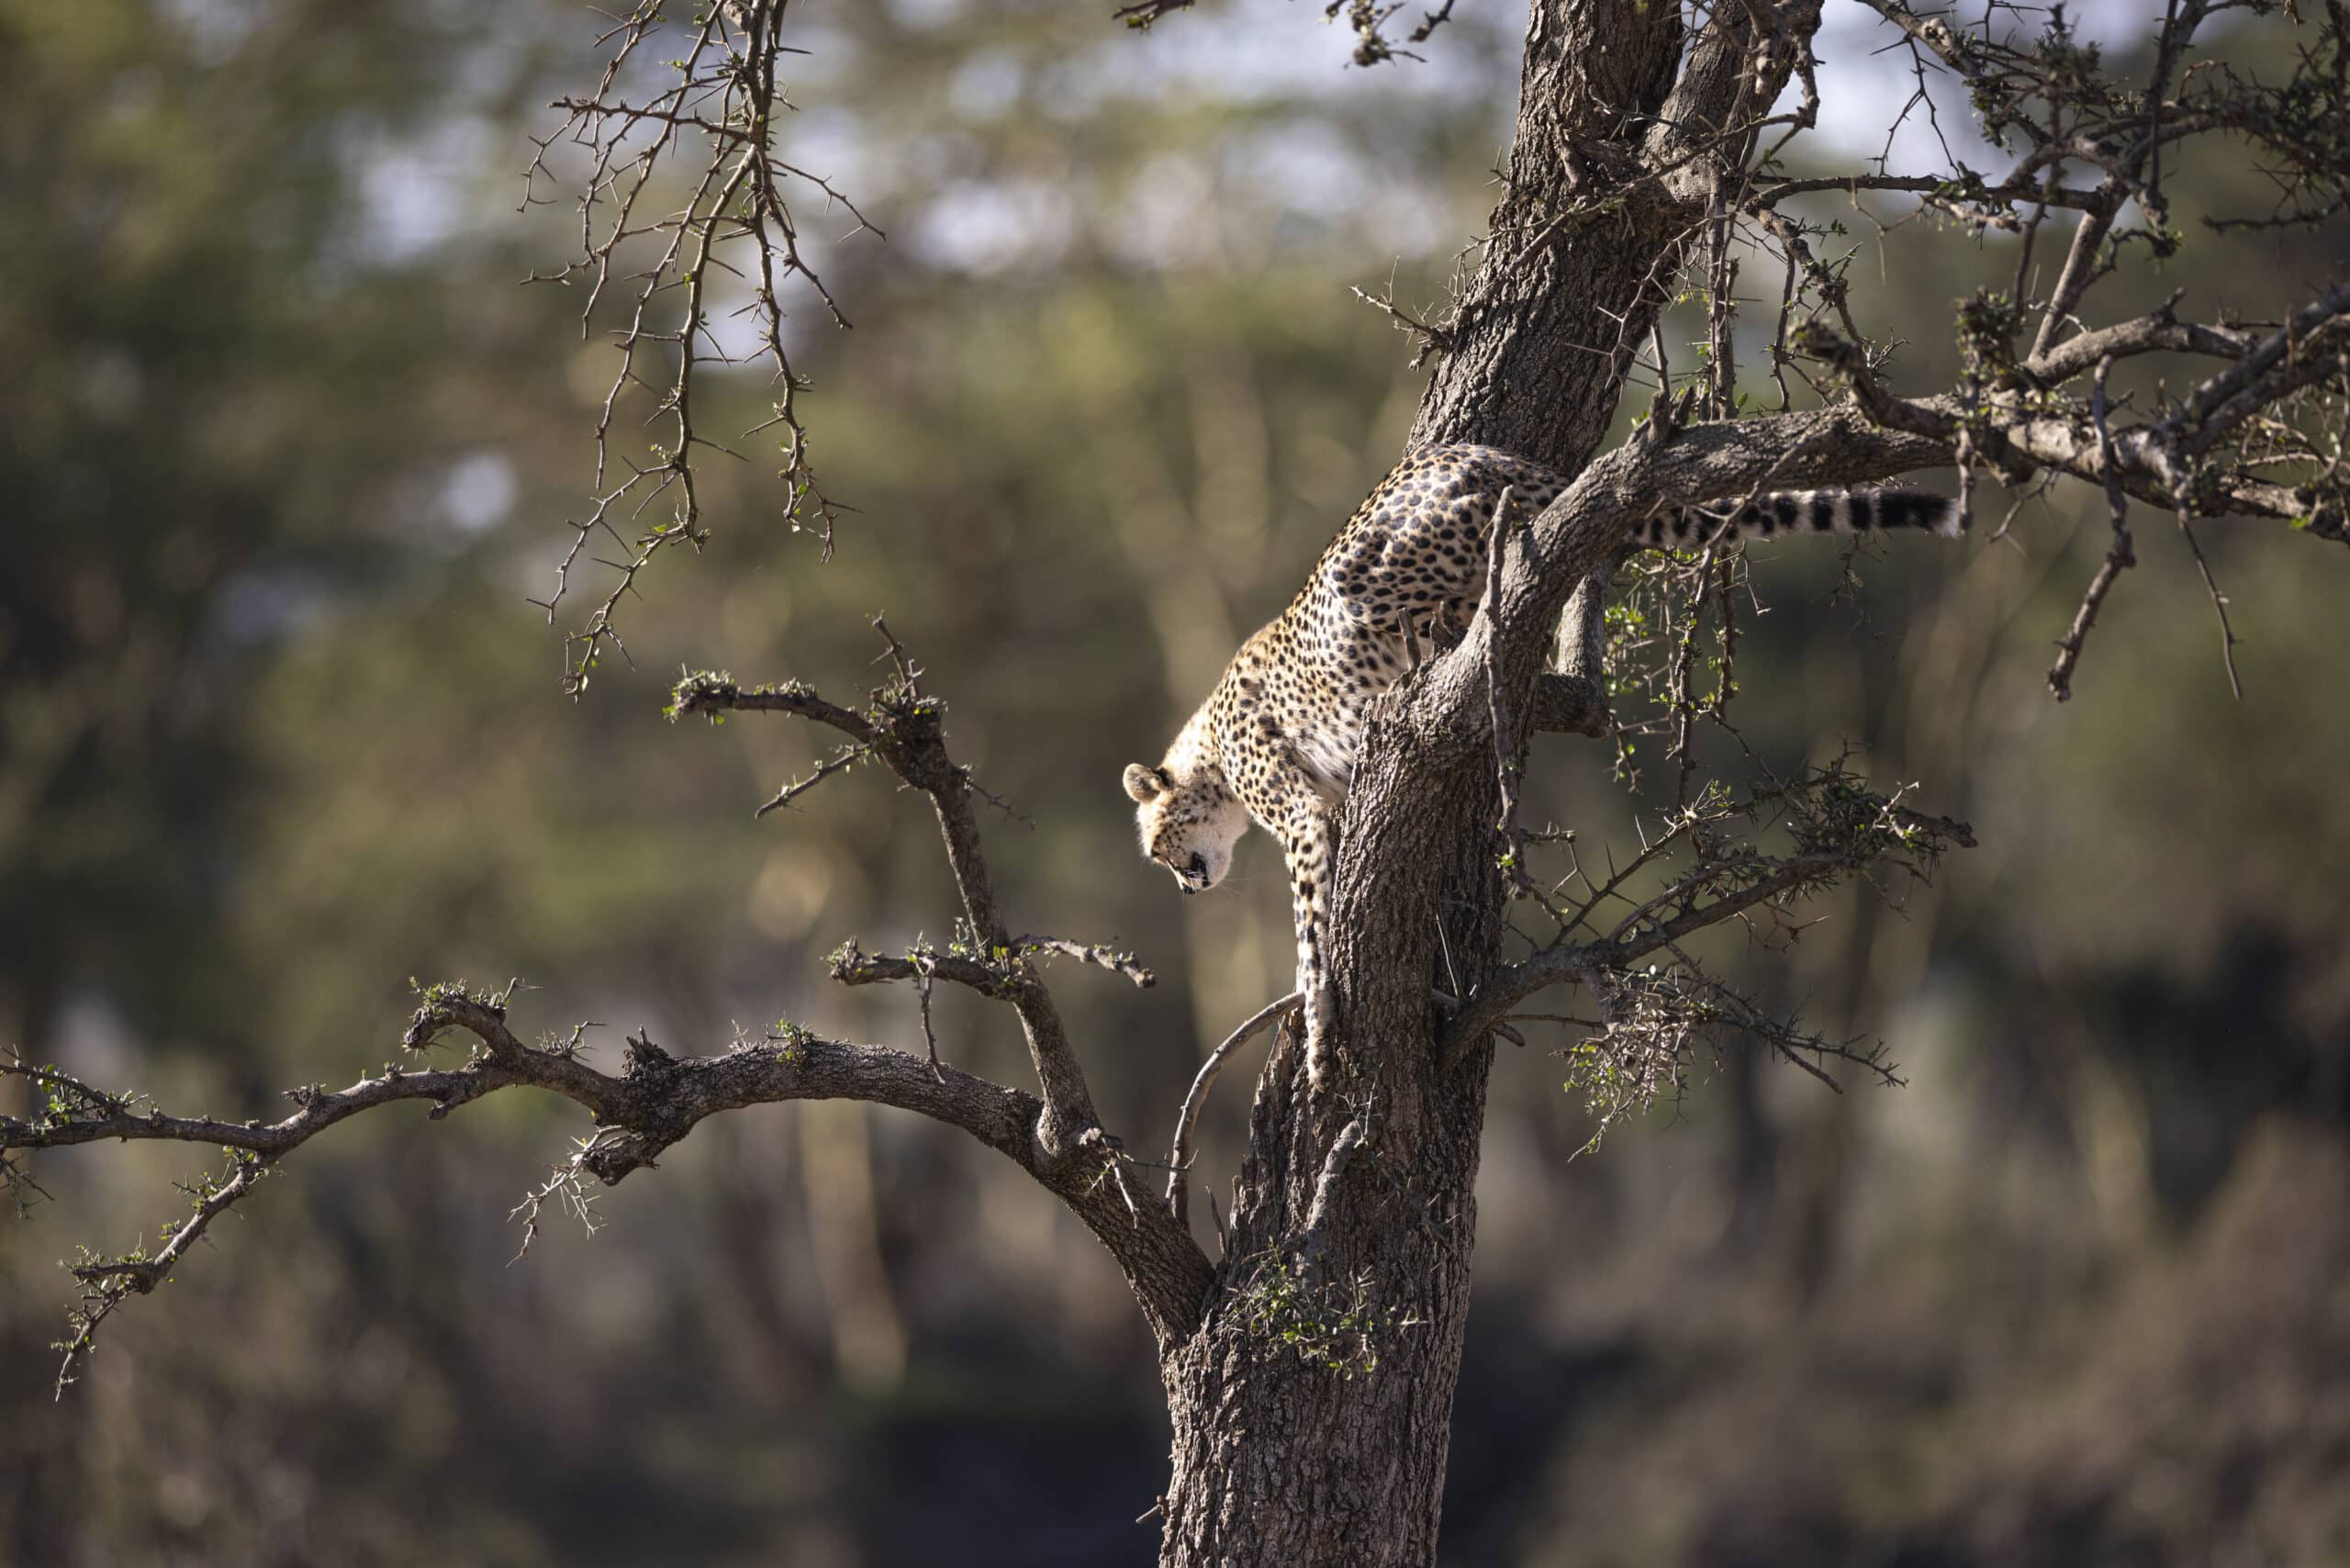 Ein Gepard thront auf einem Ast, getarnt zwischen dem Gewirr von Ästen und Blättern in einer sonnenbeschienenen Savannenlandschaft. © Fotografie Tomas Rodriguez